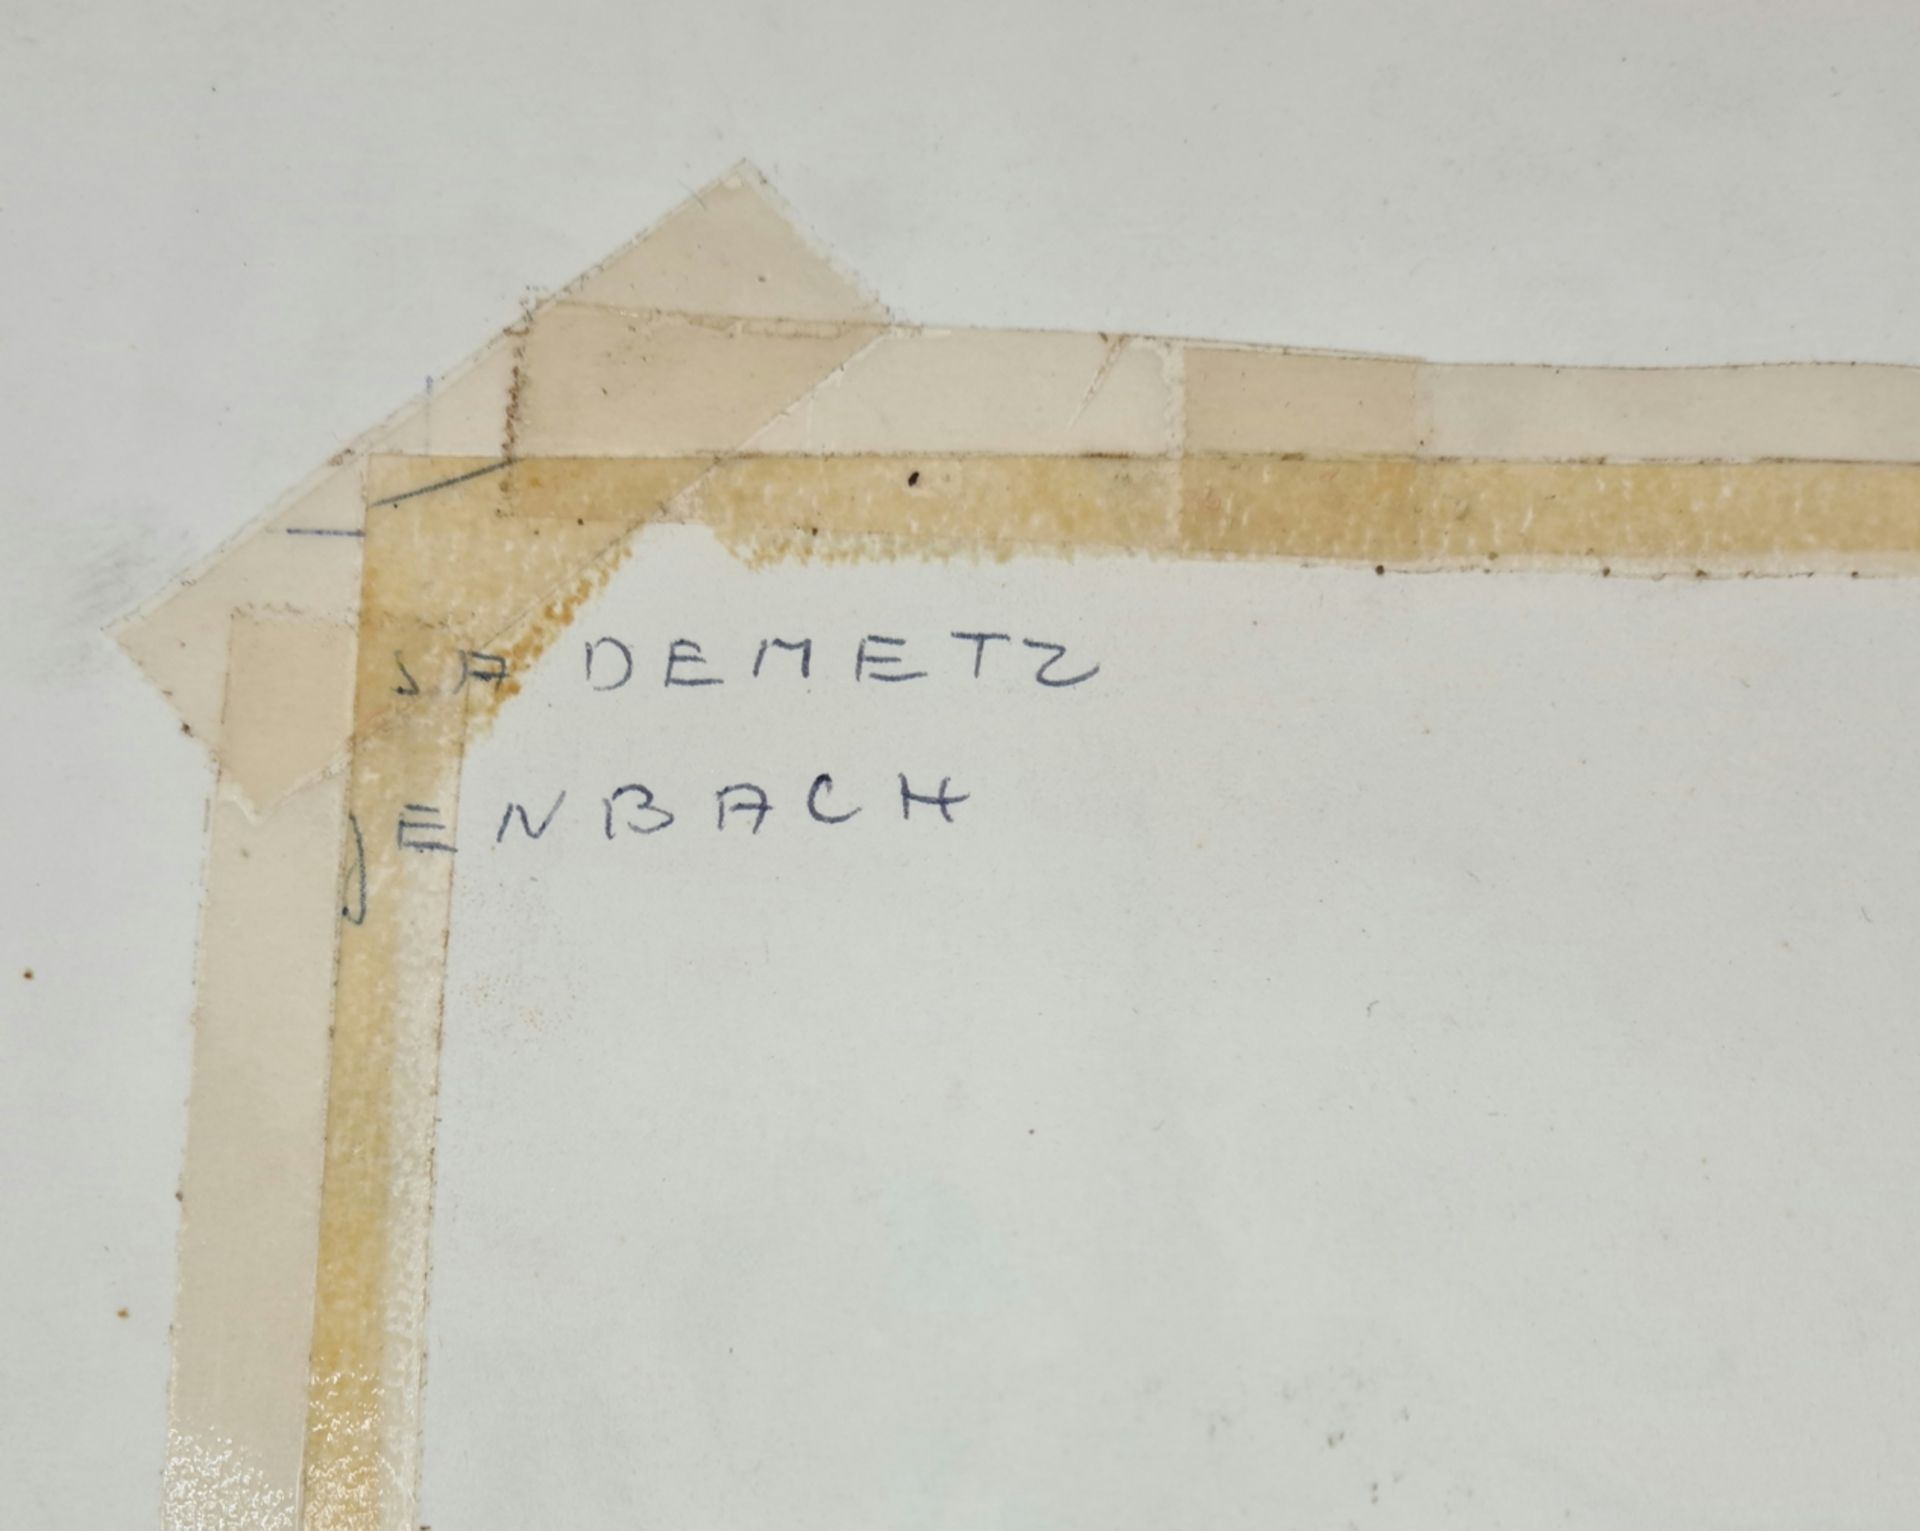 La Demetz, Jenbach , Zeichnung auf Papier, Blattgröße: 20x29cm, - Image 3 of 3